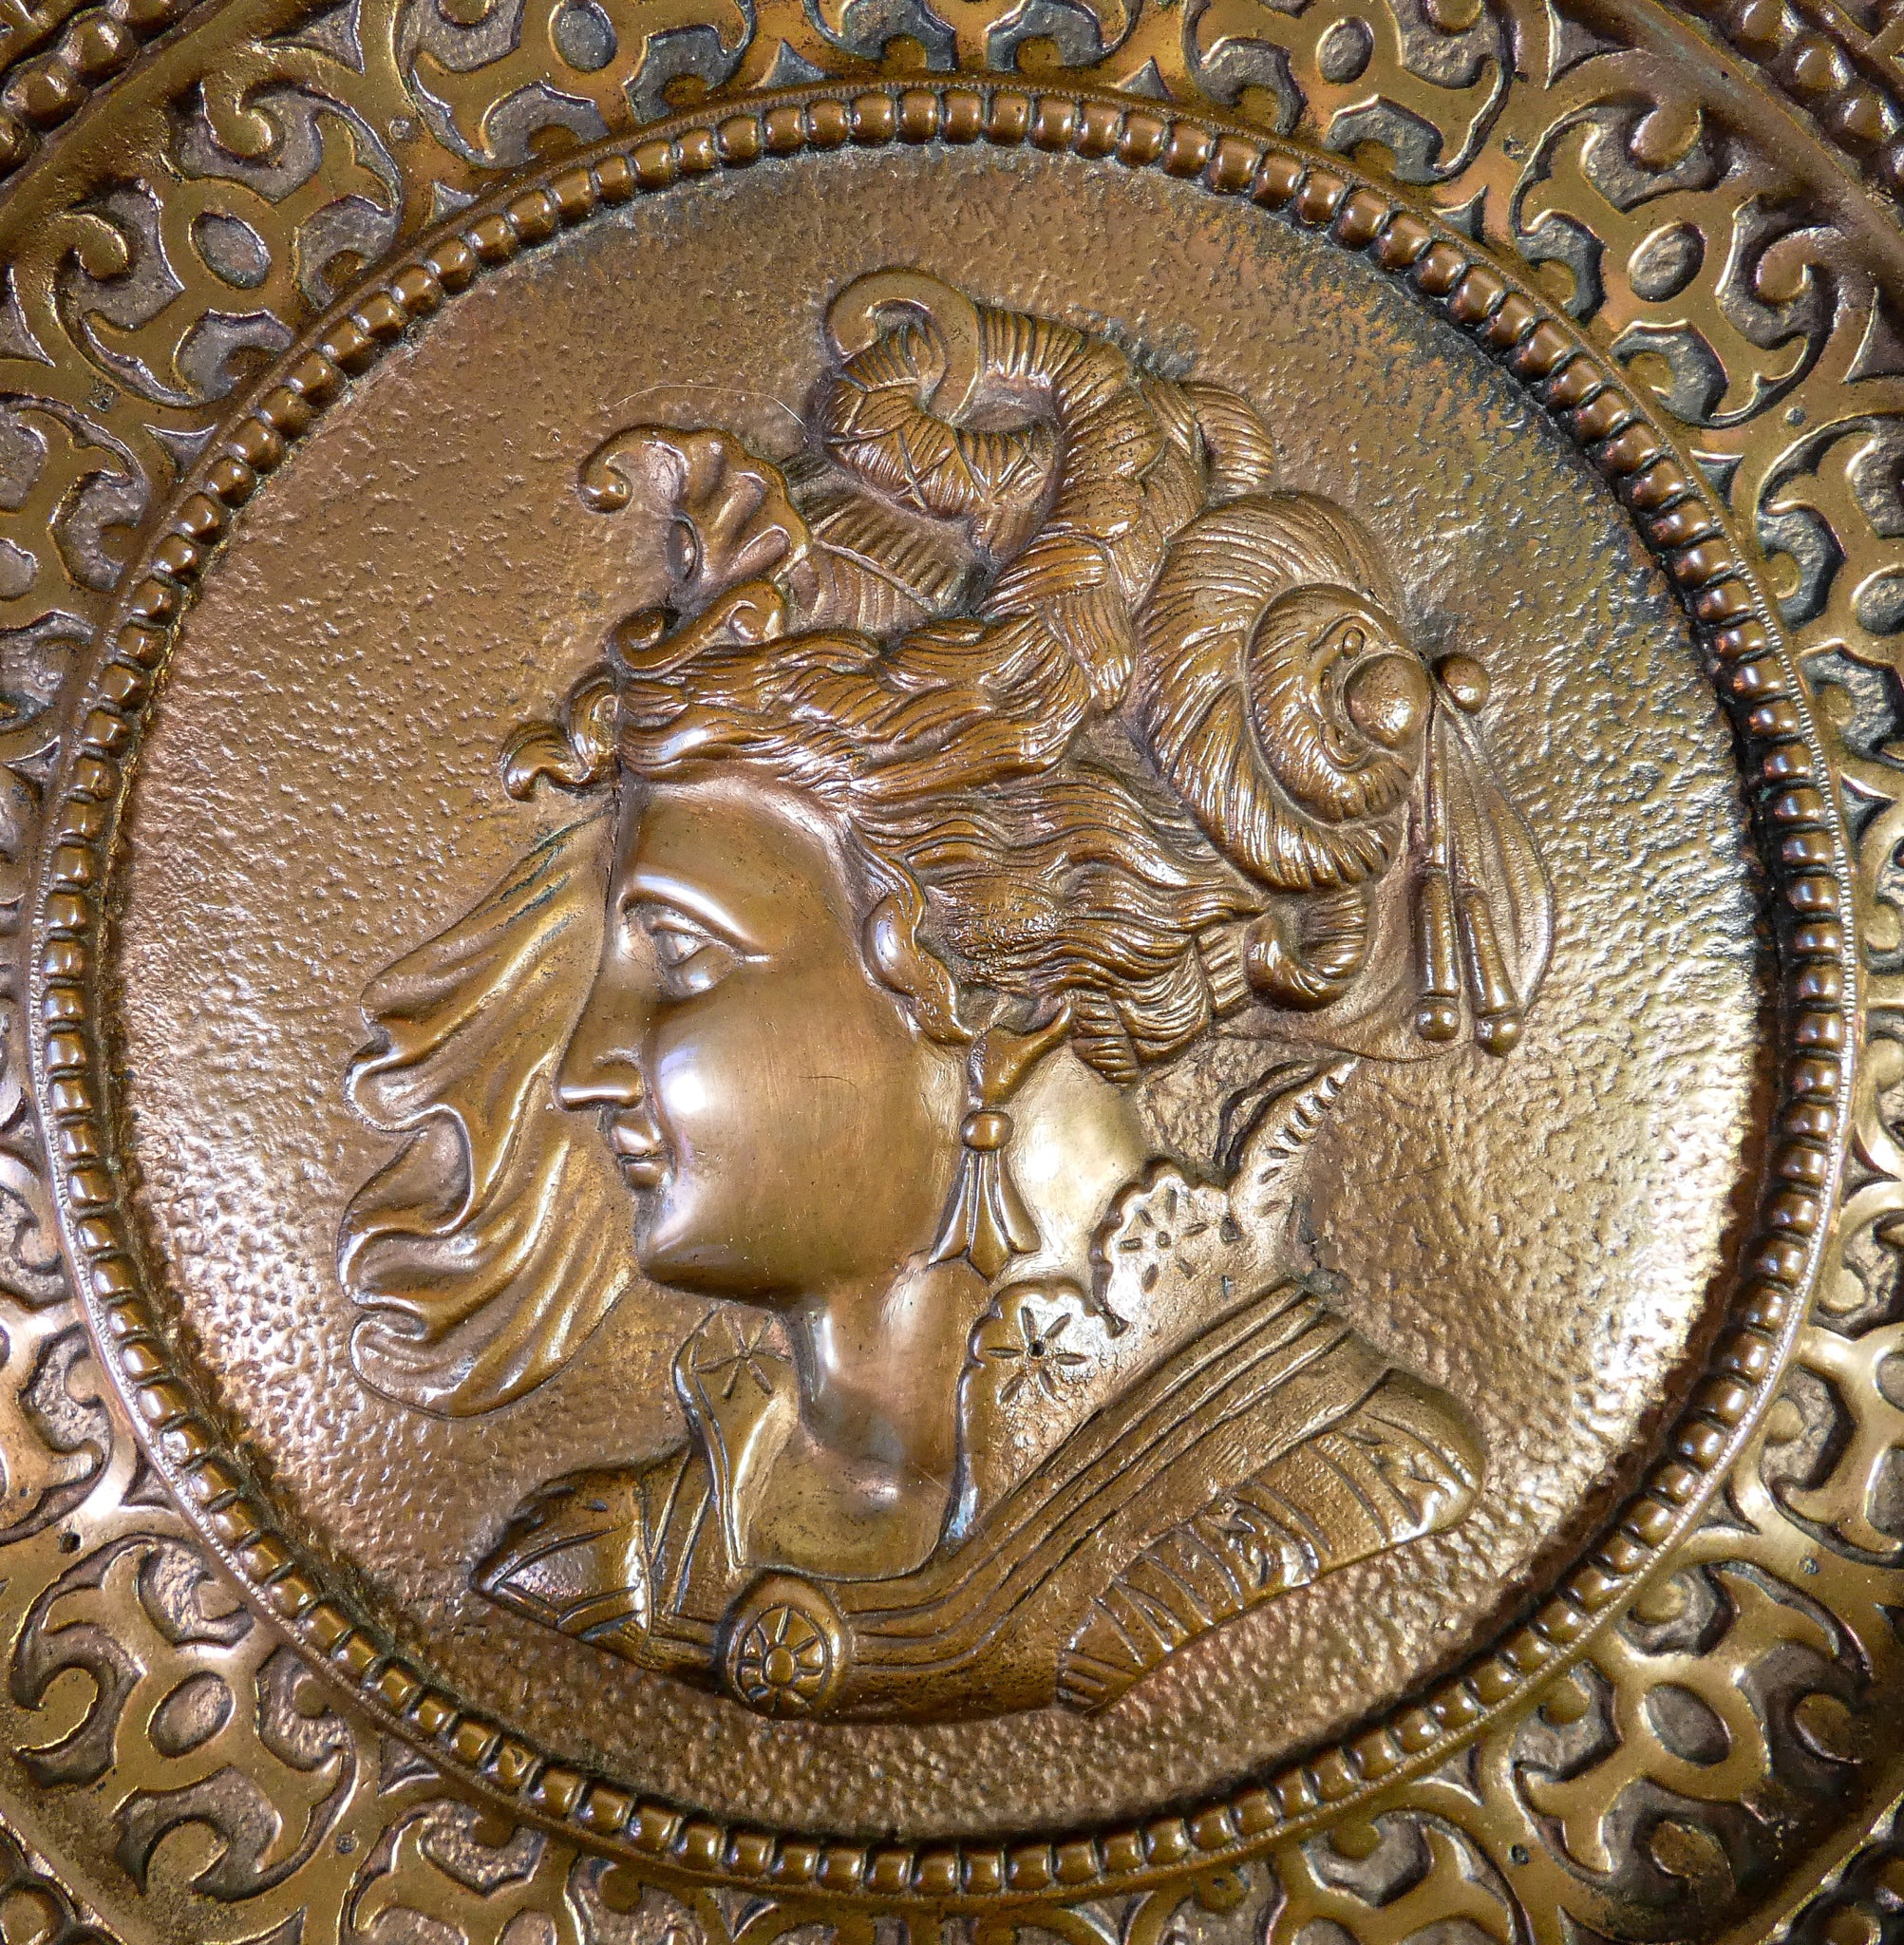 coppia piatti bronzo profili stile neoclassico grottesche cavaliere dama